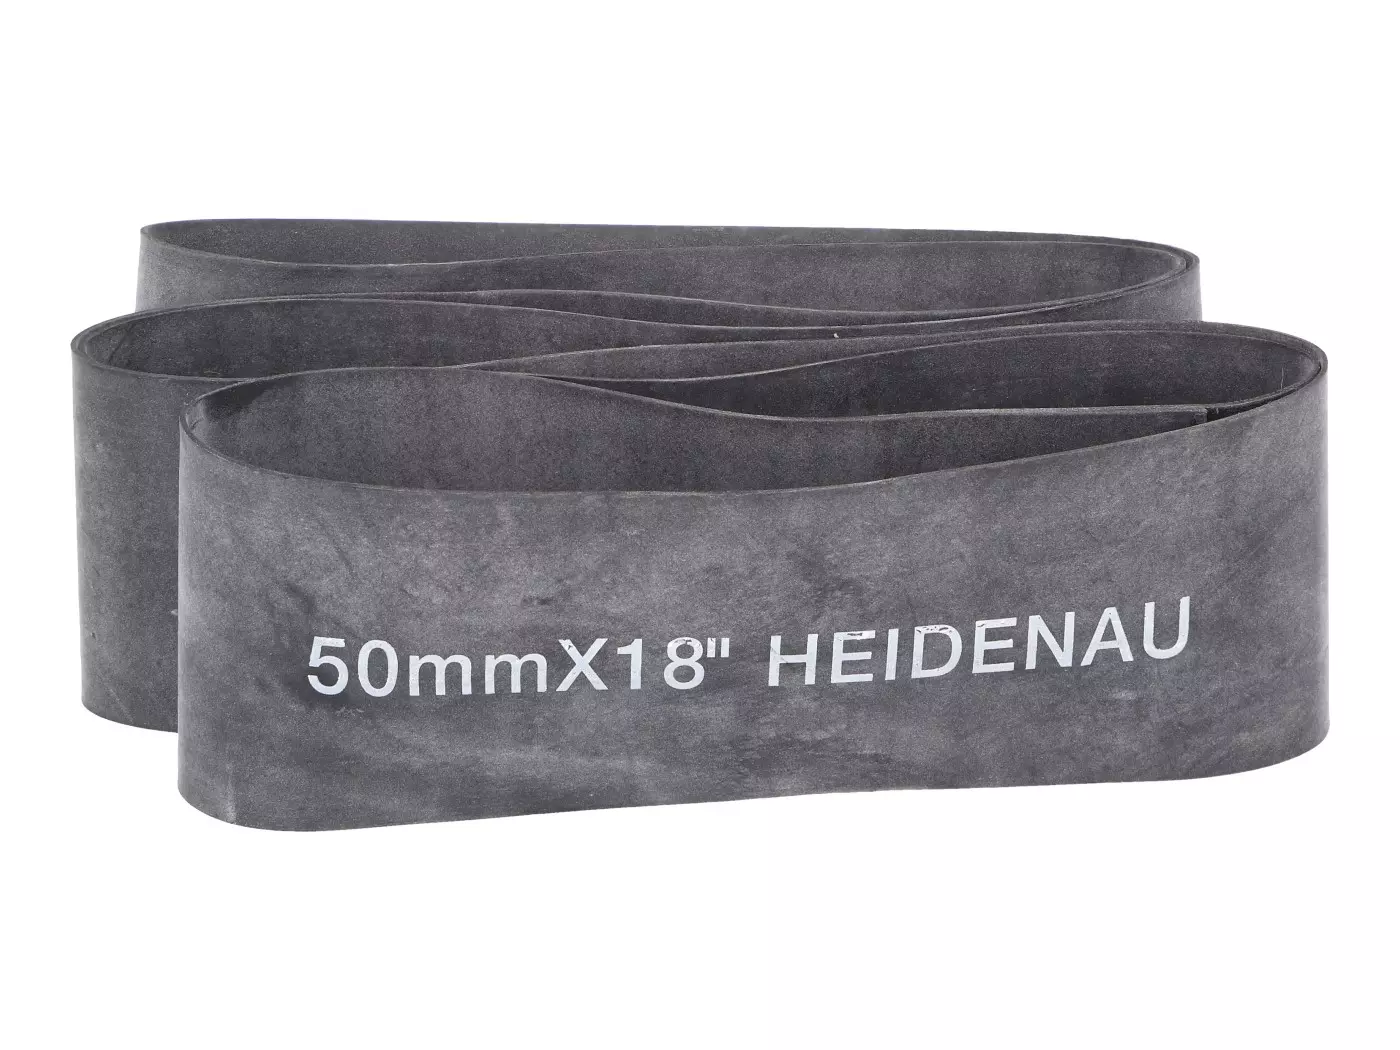 Velglint Heidenau 18 Velg - 50mm